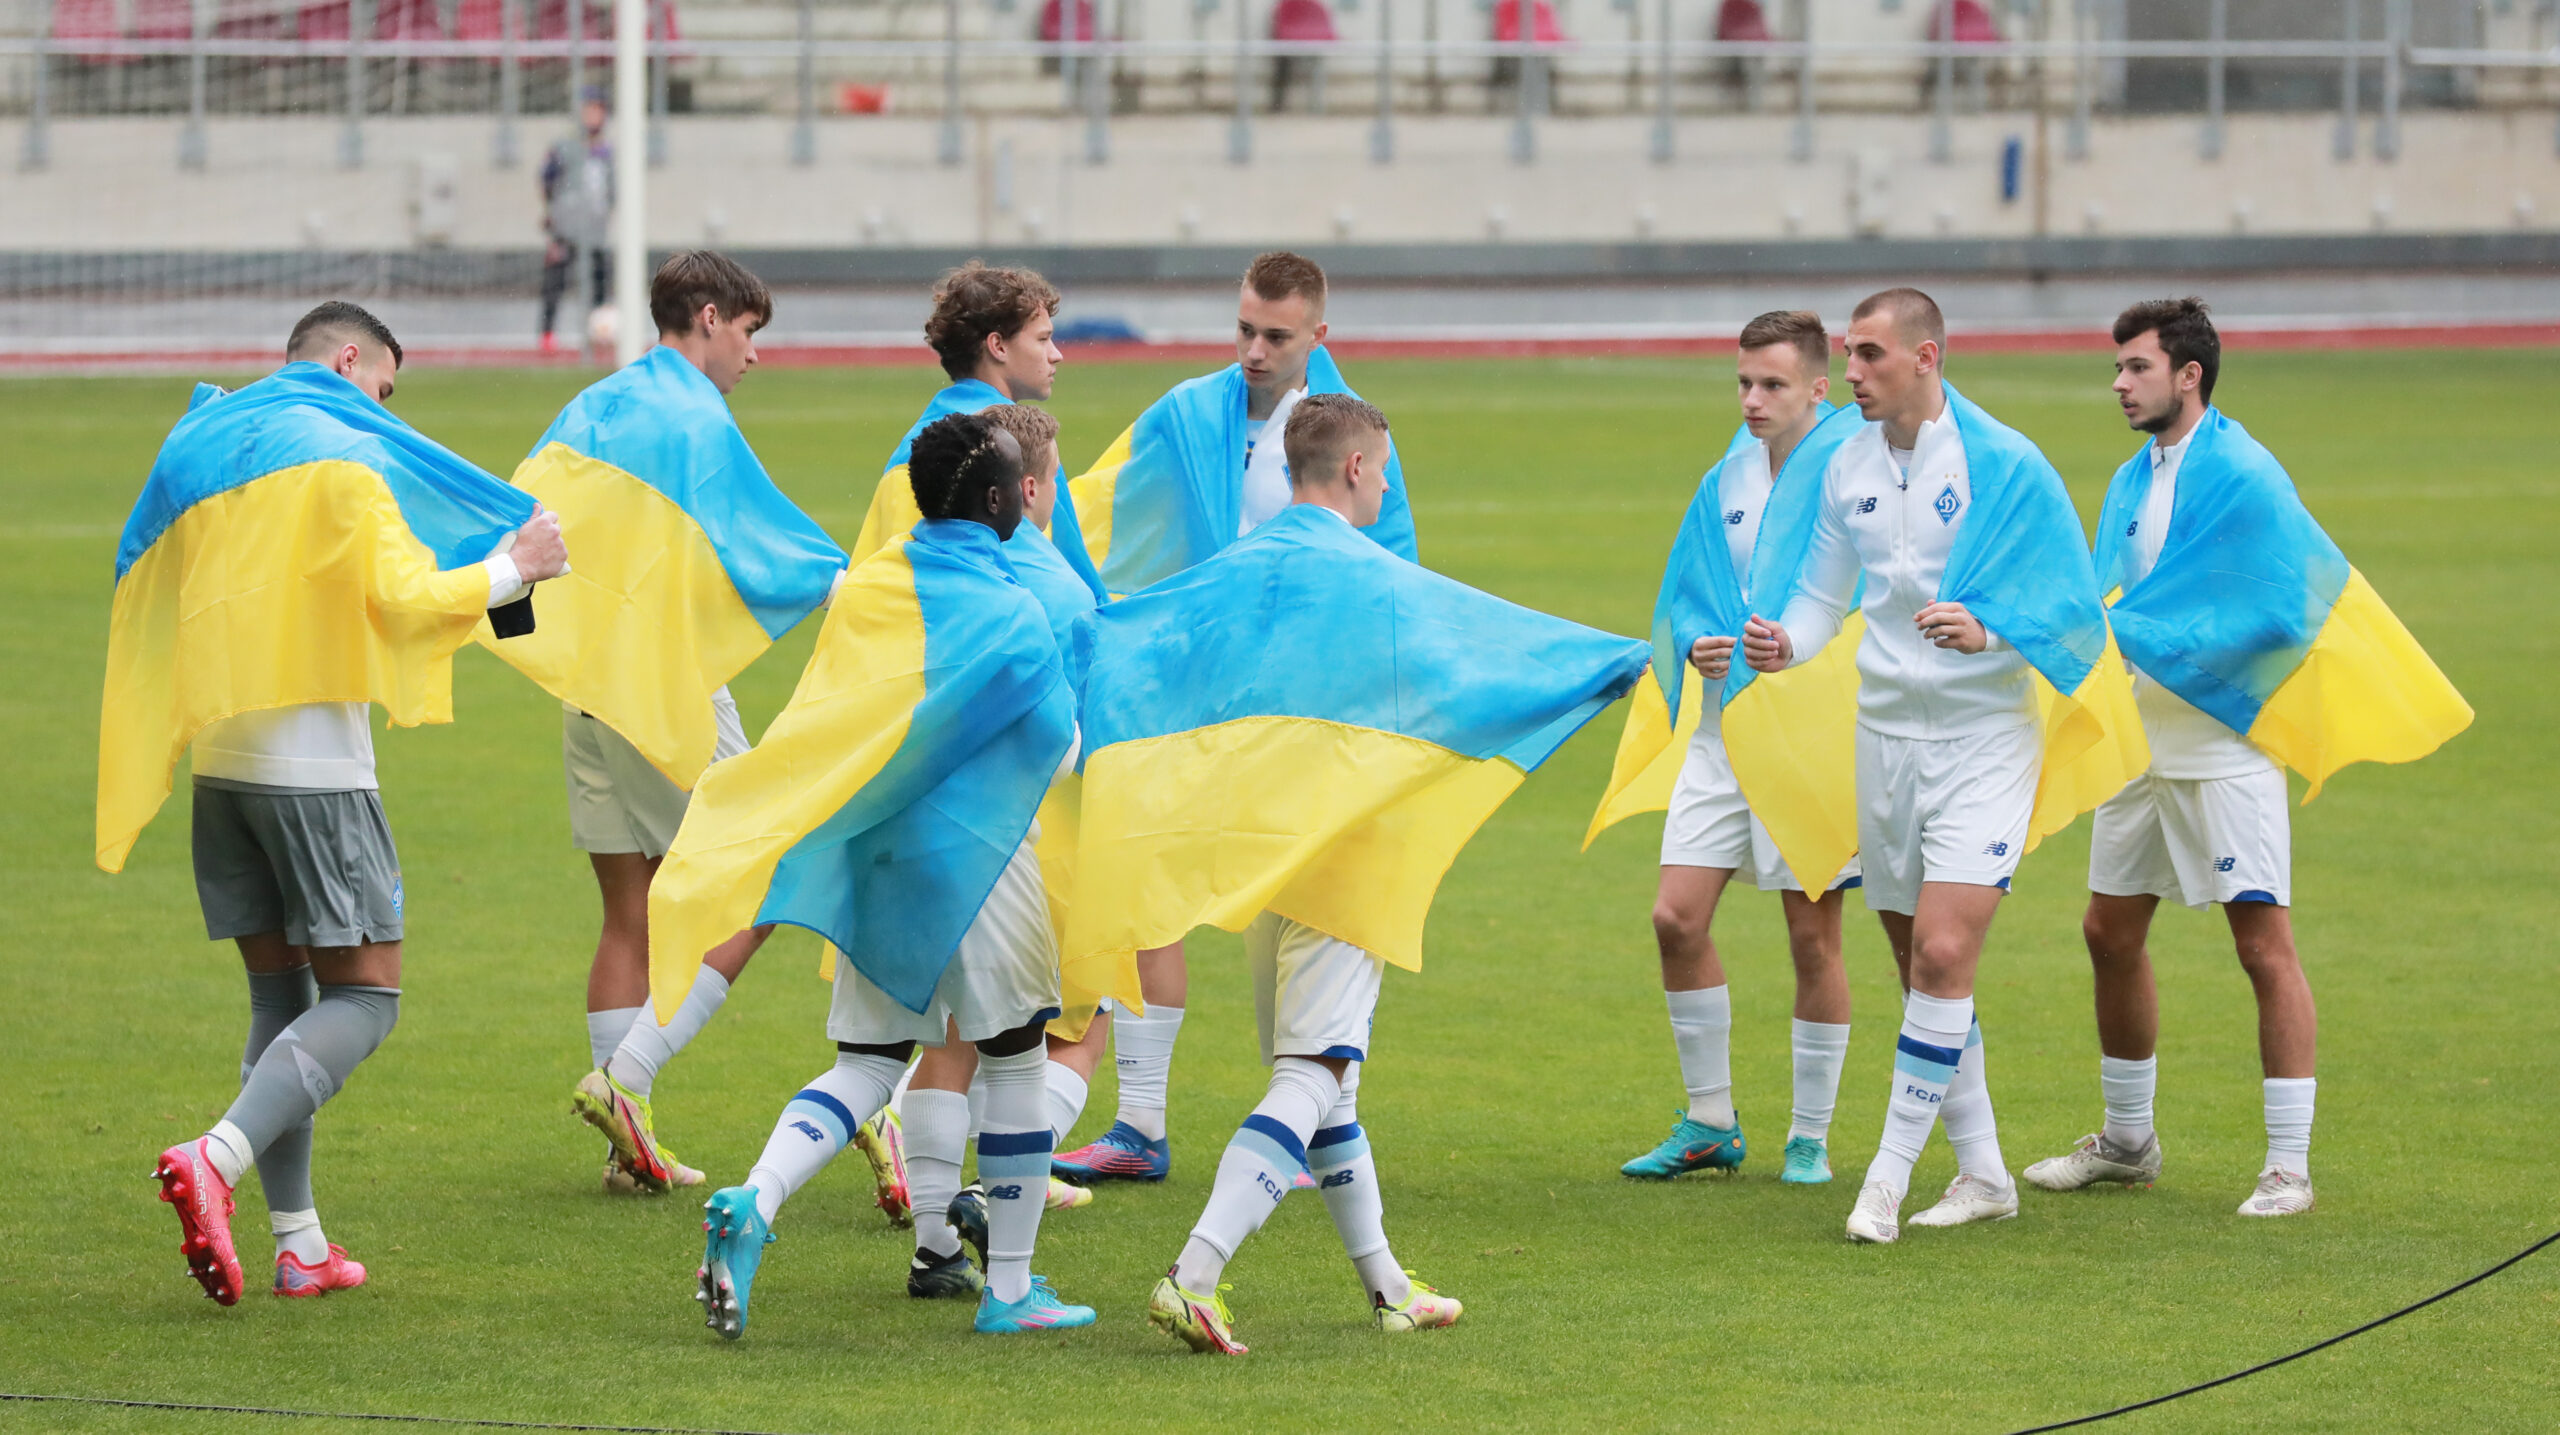 Dynamo Kiews Nachwuchs in ukrainischen Farben